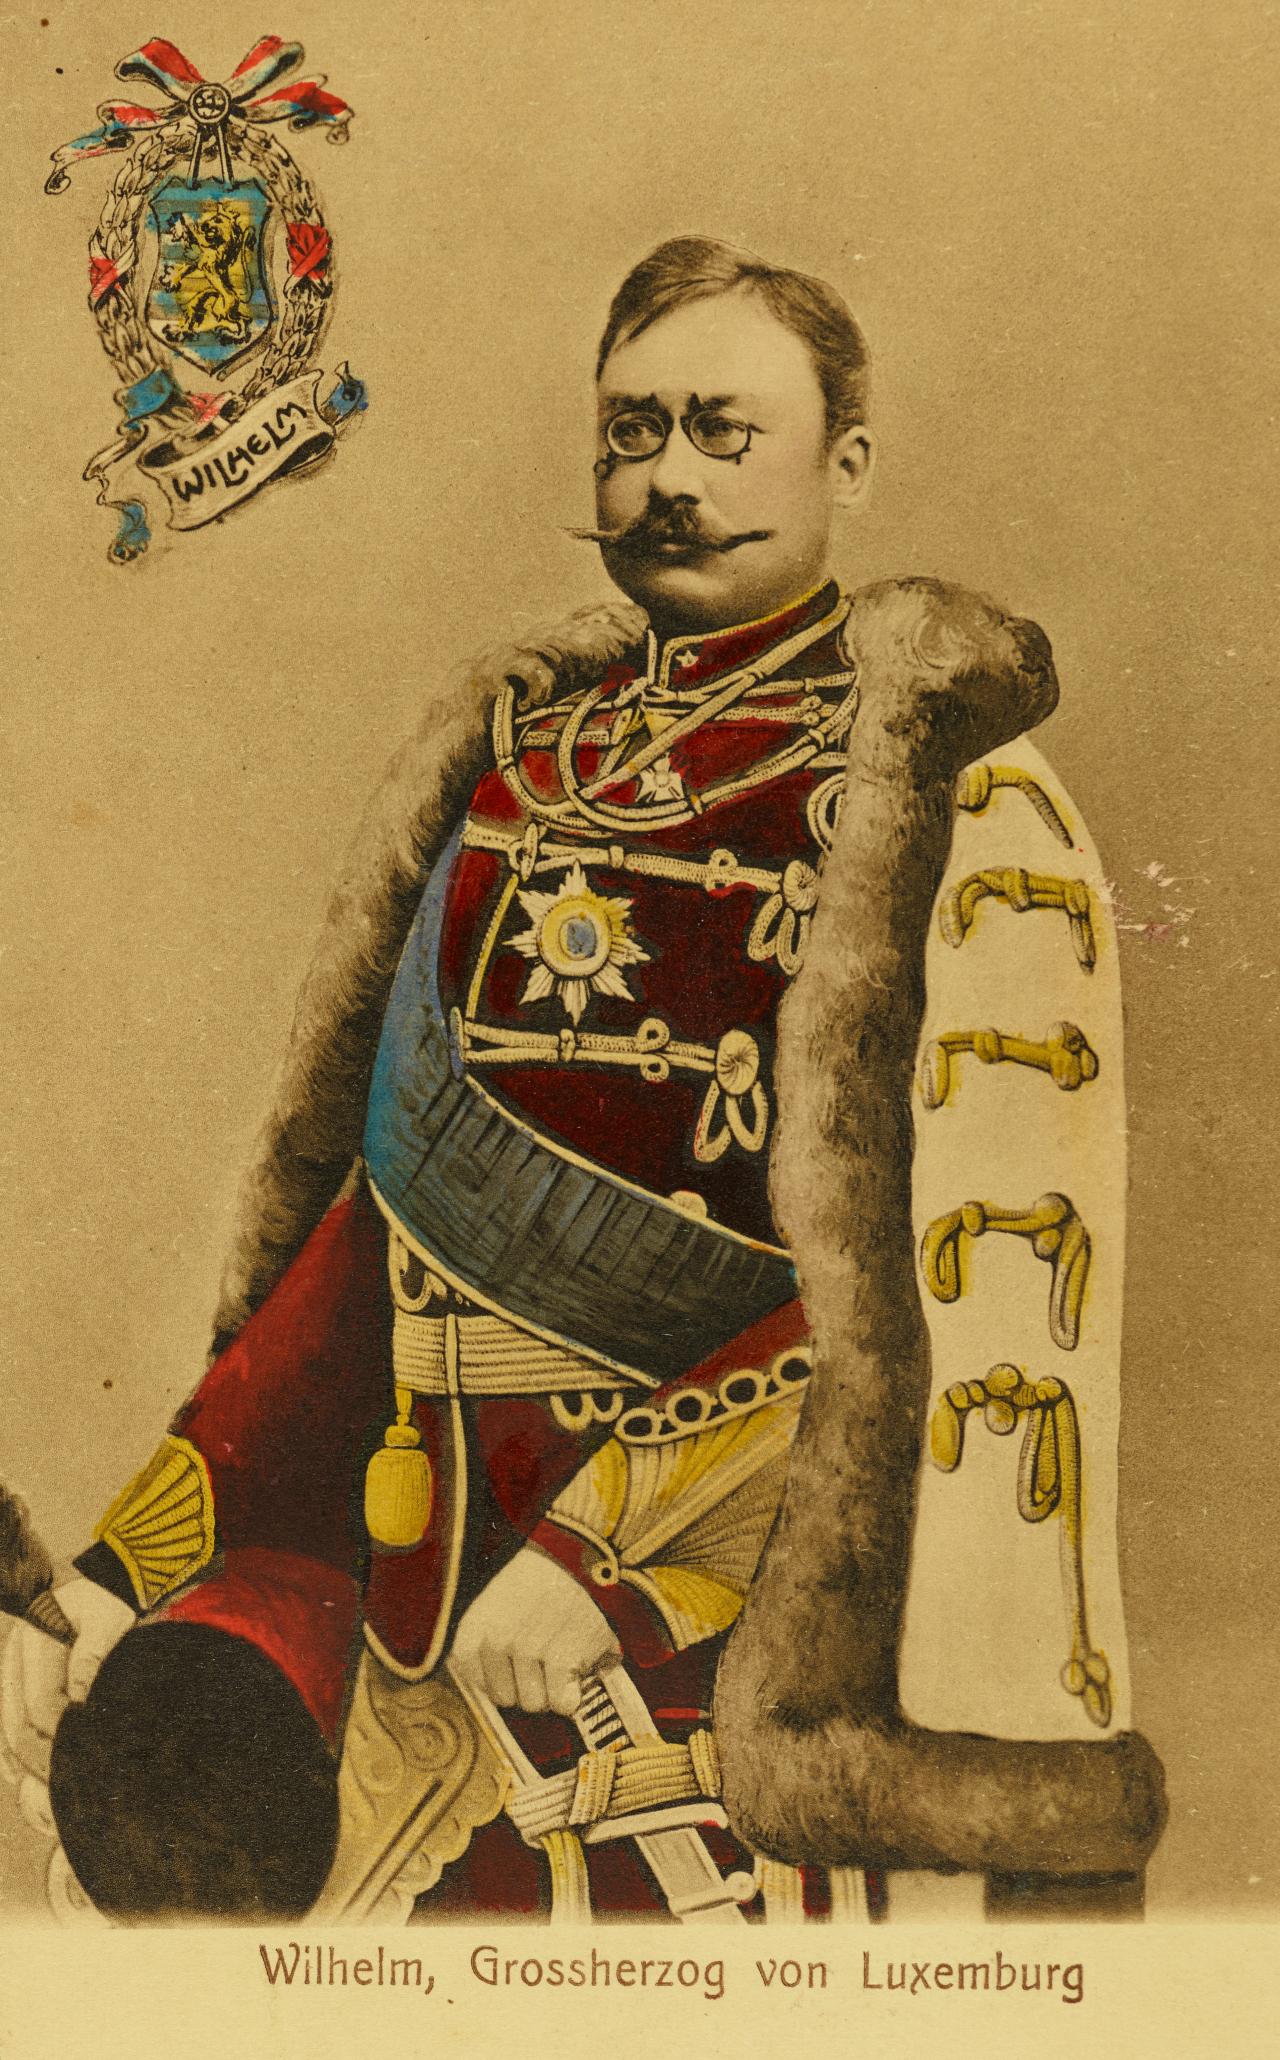 Carte postale de S.A.R. le Grand-Duc héritier Guillaume IV de Luxembourg